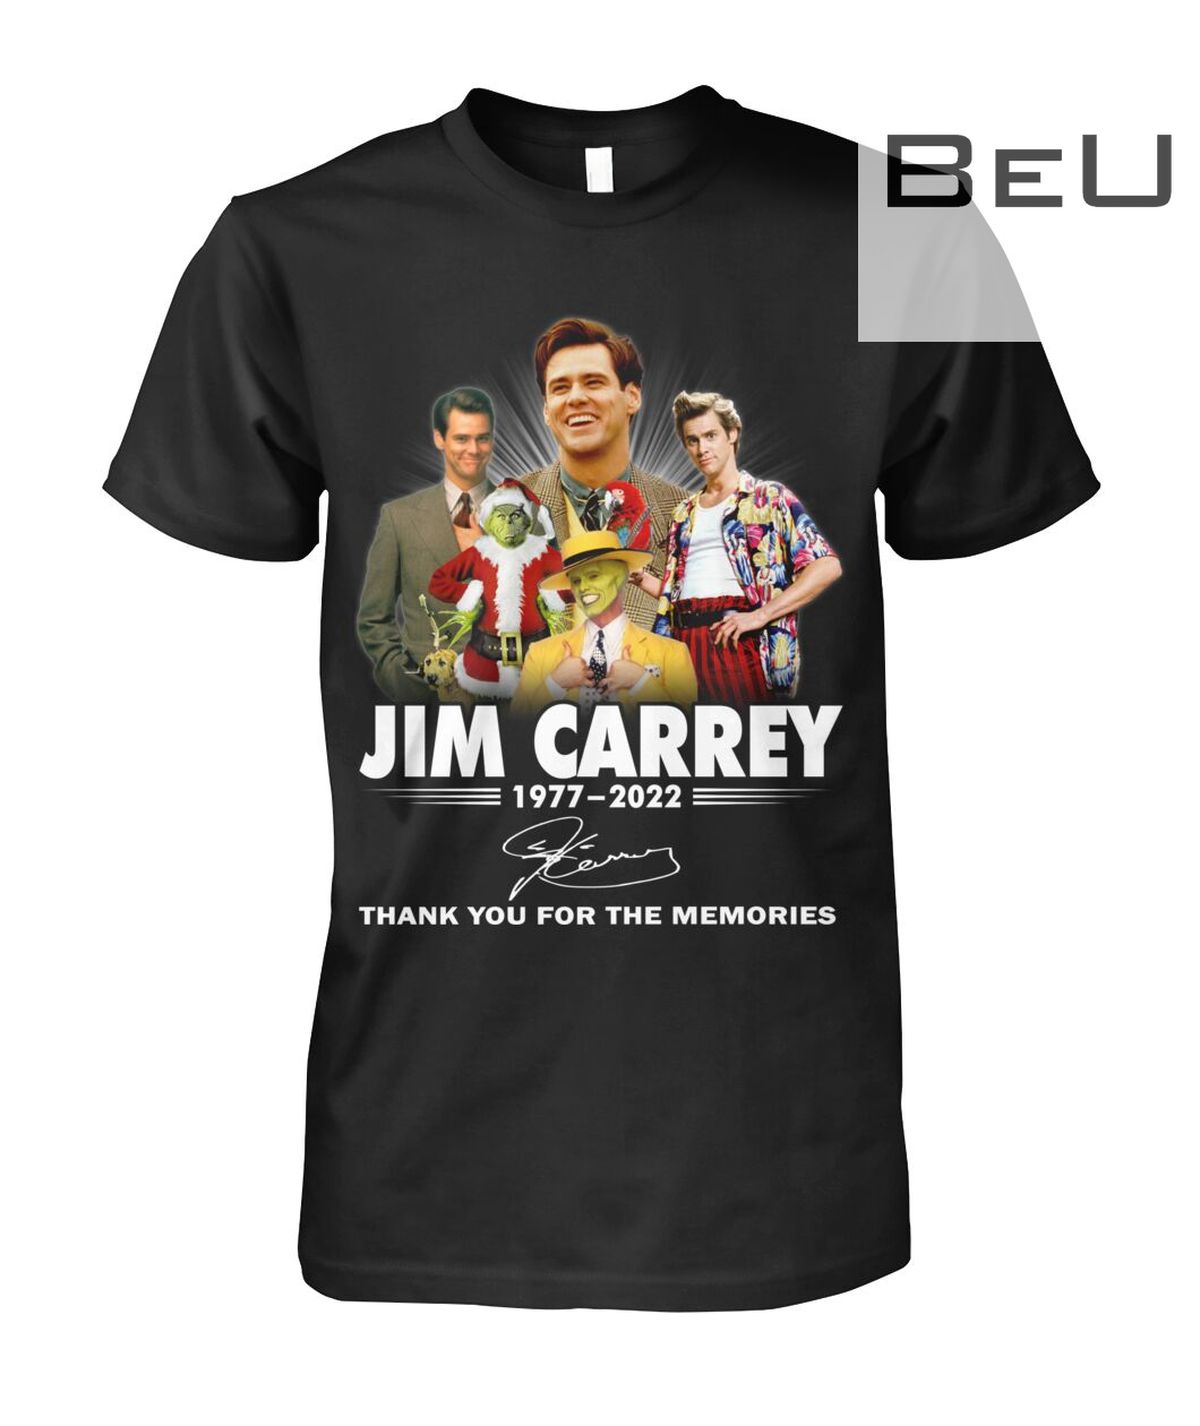 Jim Carrey 1977-2022 Signature Thank You For The Memories Shirt